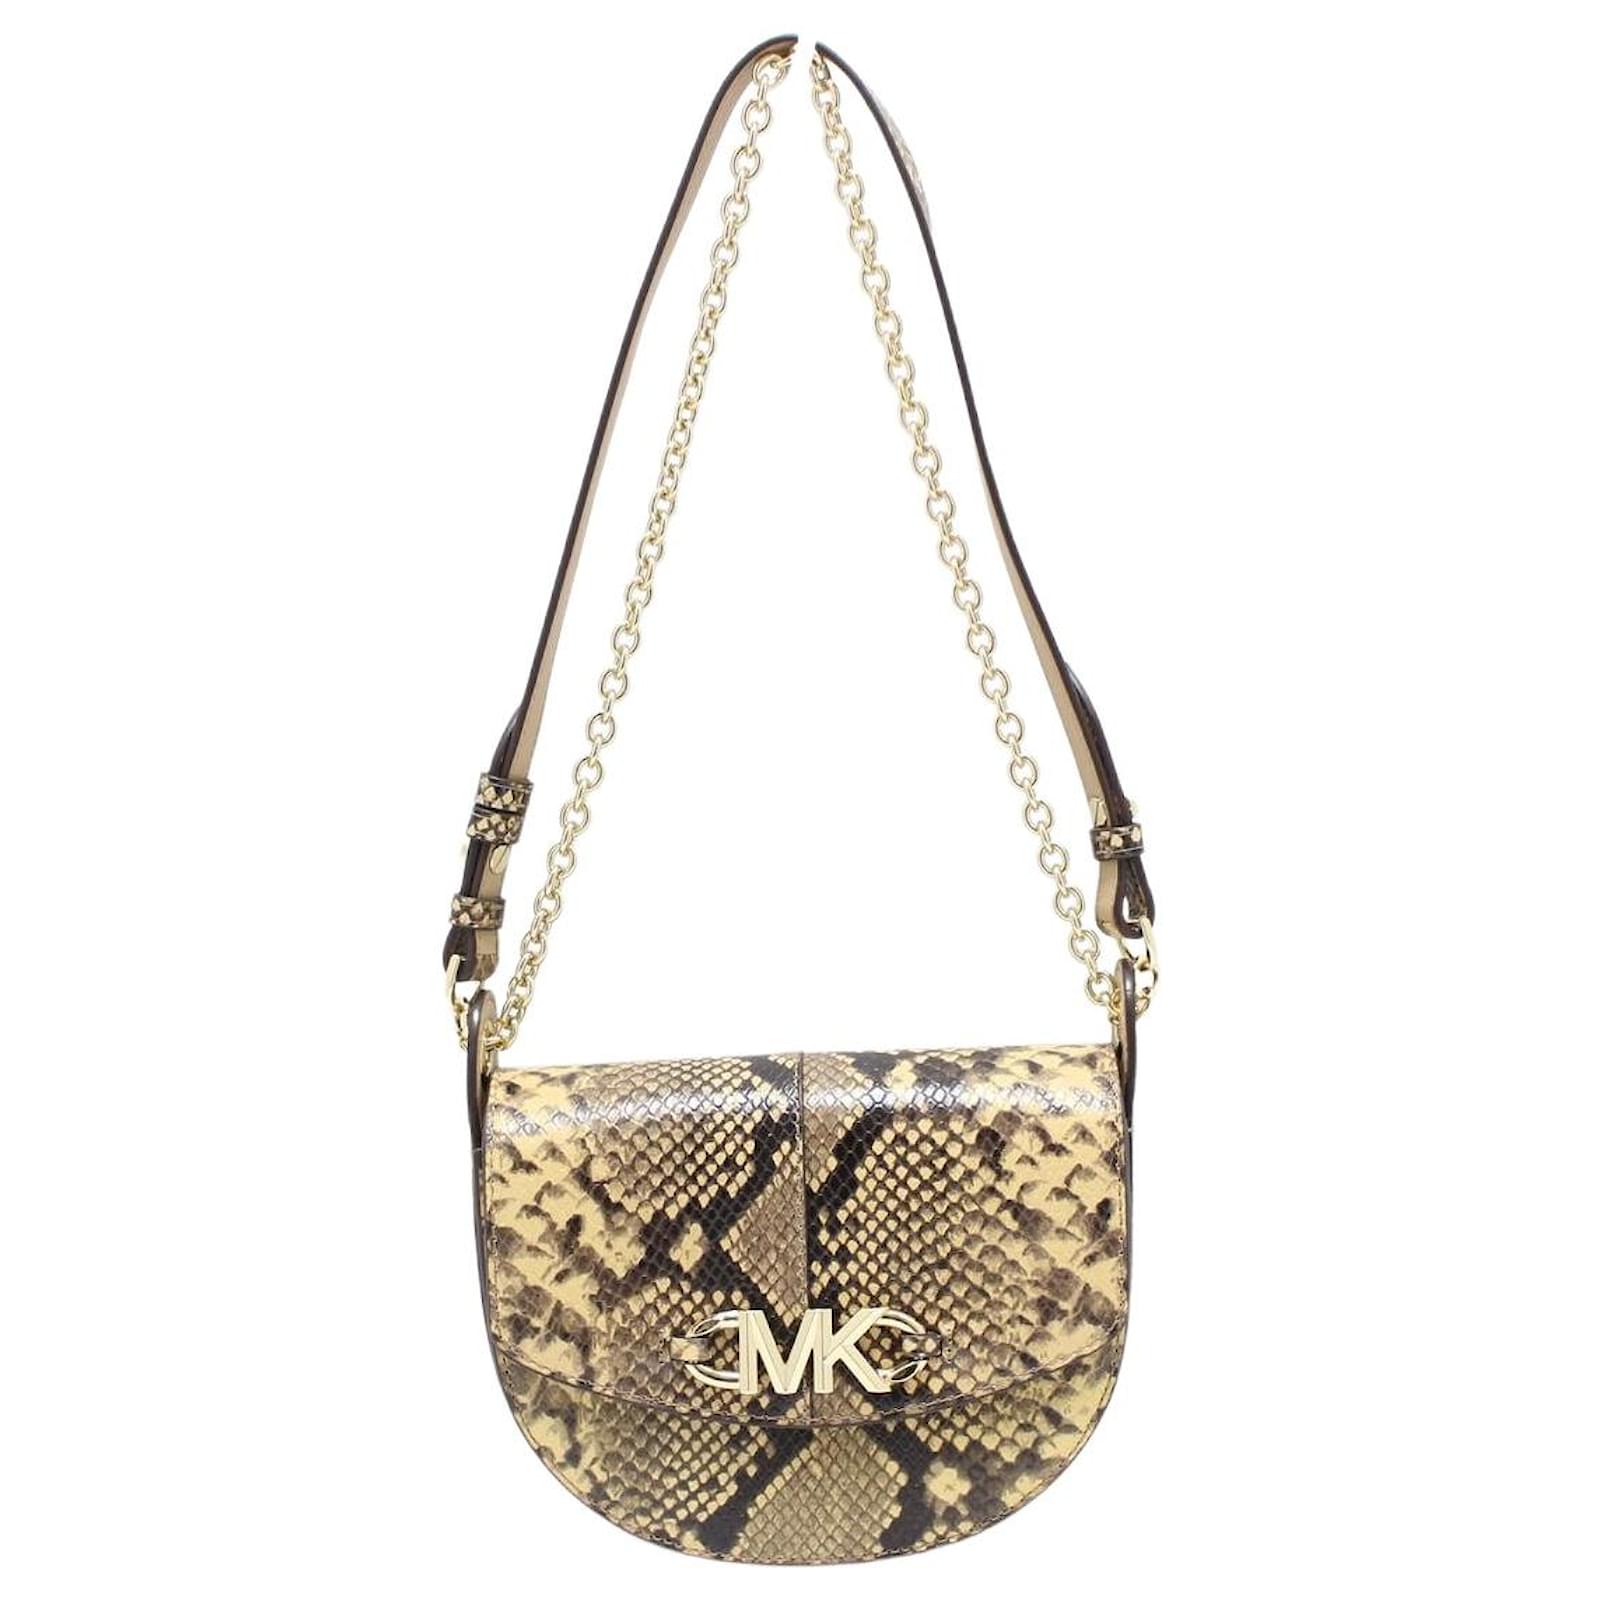 Michael Kors Animal Print Handbags